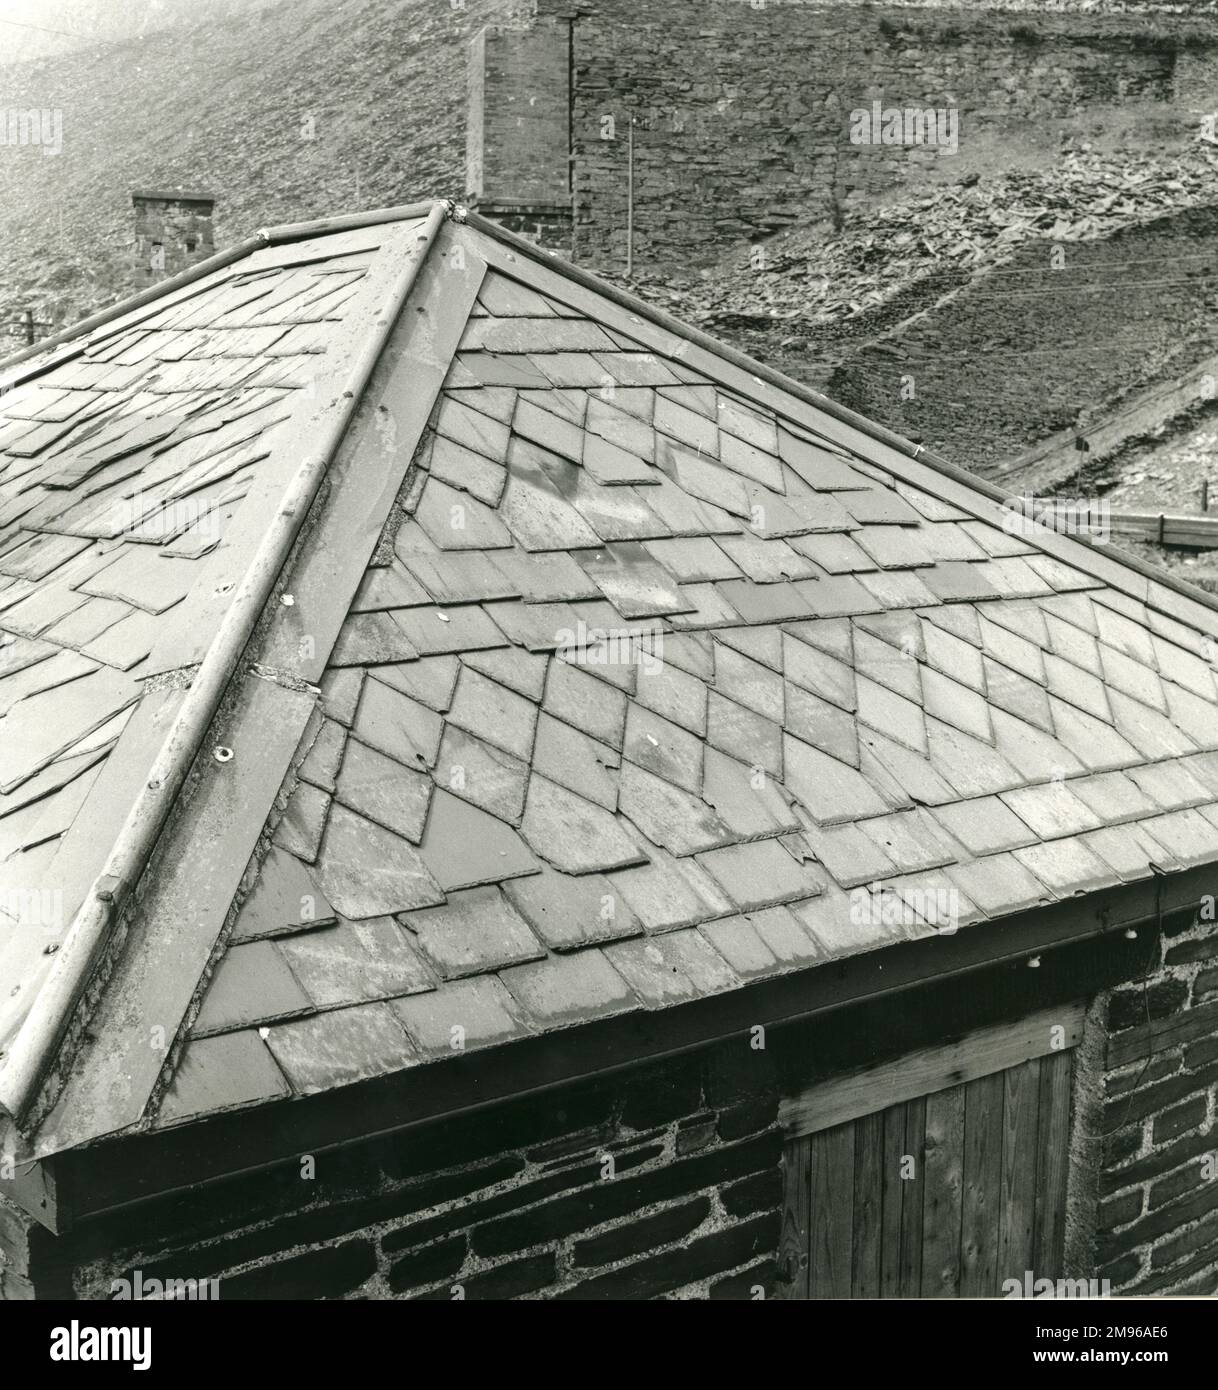 Répétition complexe faite d'ardoise sur le toit d'un pont-bascule abandonné à la carrière Blaenau Ffestinog Slate, Caernarvonshire (maintenant Gwynedd), au nord du pays de Galles. La structure du bâtiment est également en ardoise de déchets, comme beaucoup d'autres bâtiments de la région, y compris des maisons. Banque D'Images